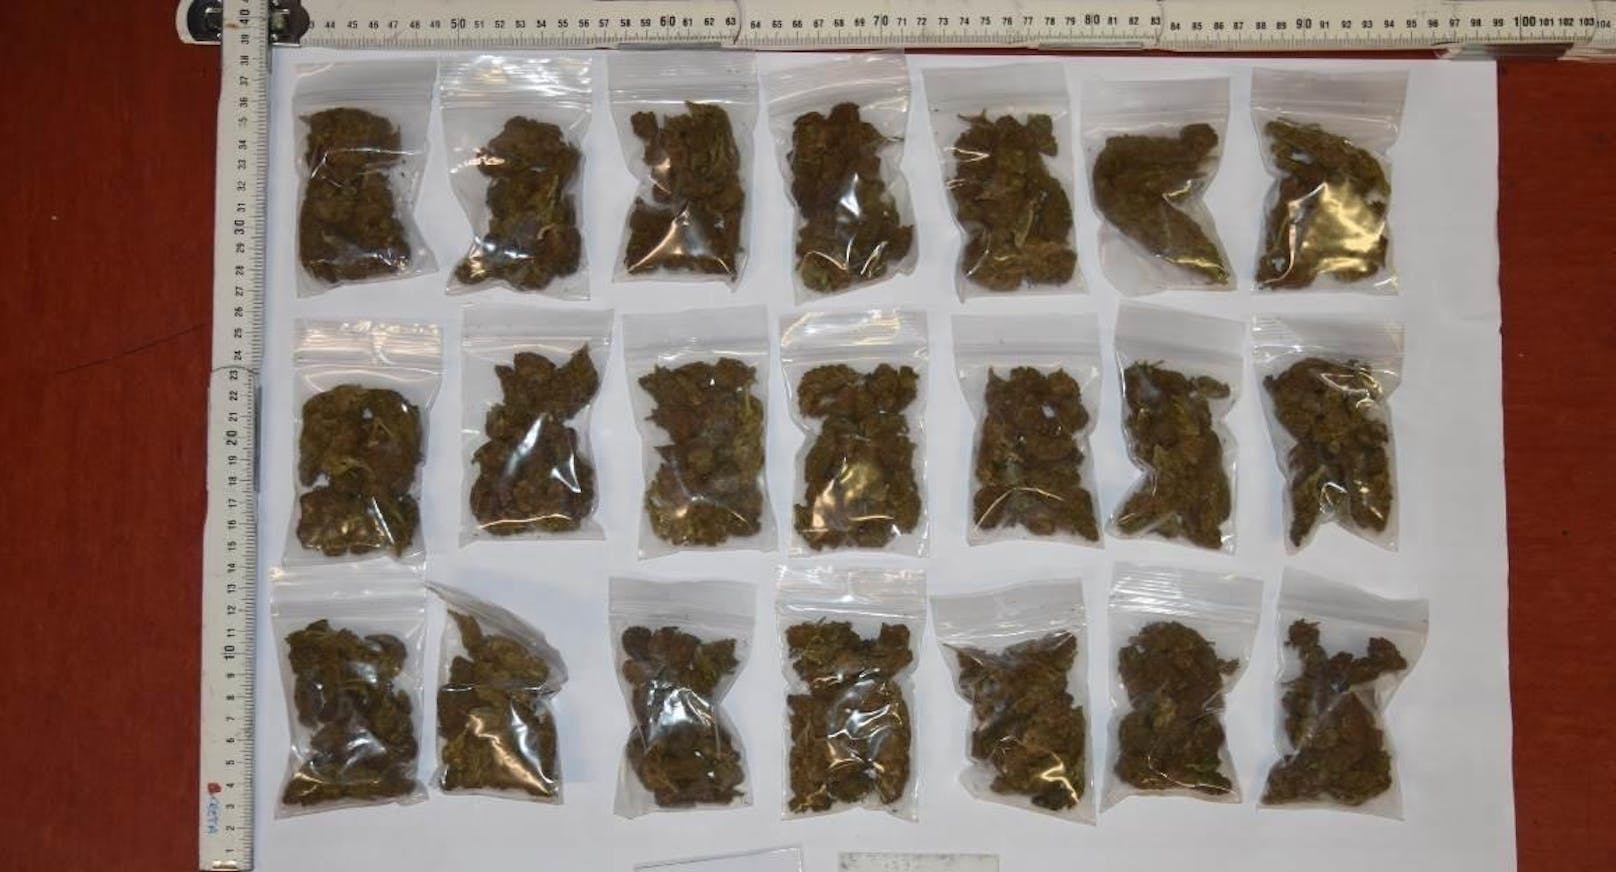 Insgesamt 1,3 Kilo Cannabis konnten sichergestellt werden.